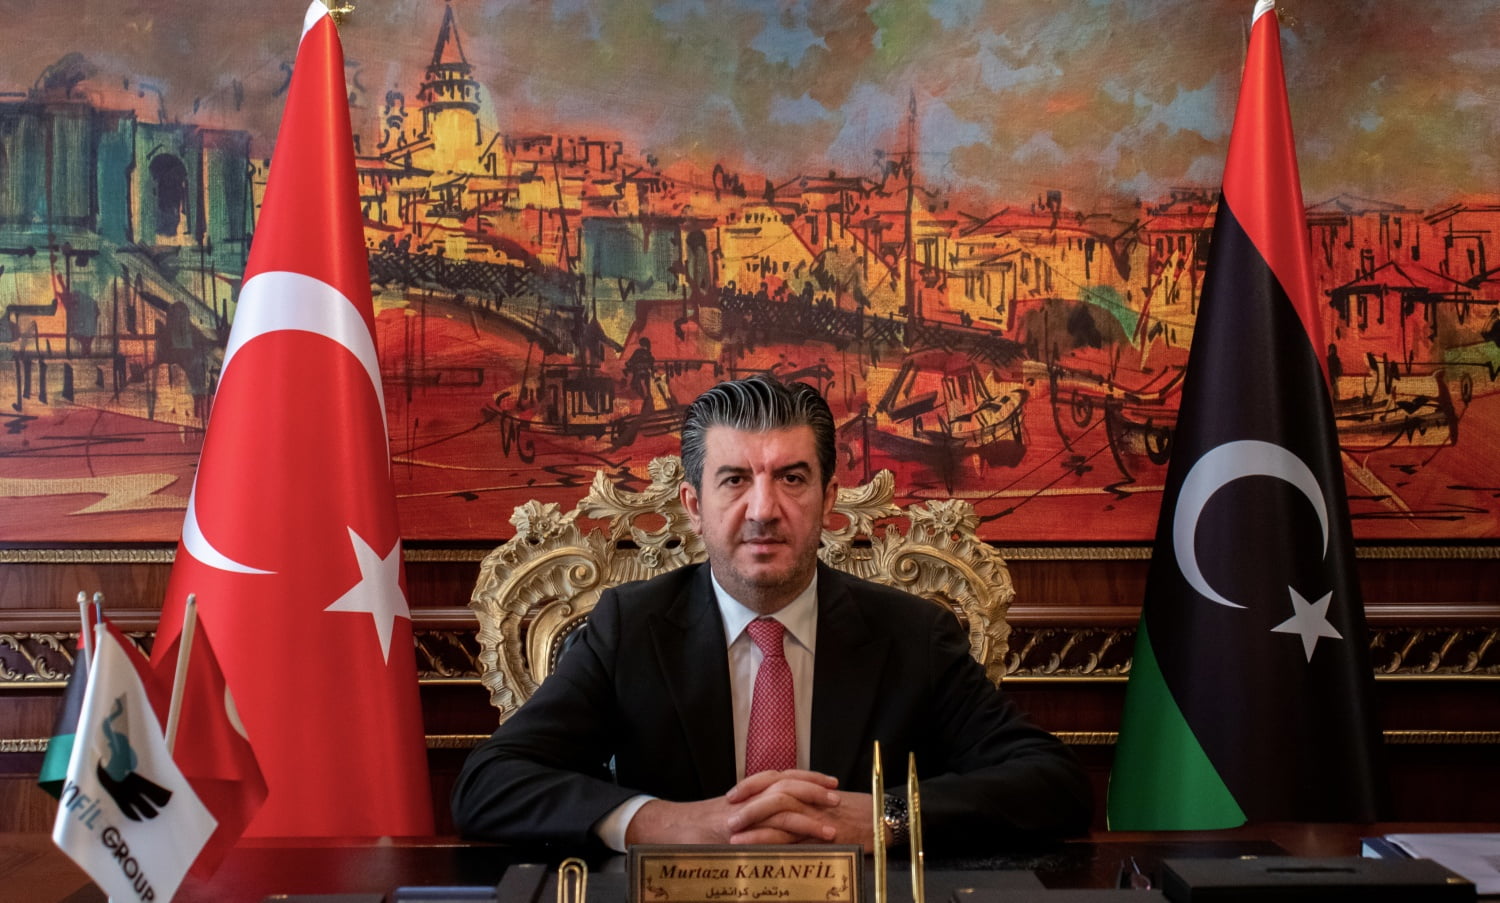 Ο όμιλος Karanfil προτρέπει τους Τούρκους επιχειρηματίες να κάνουν περισσότερες επενδύσεις στην Λιβύη